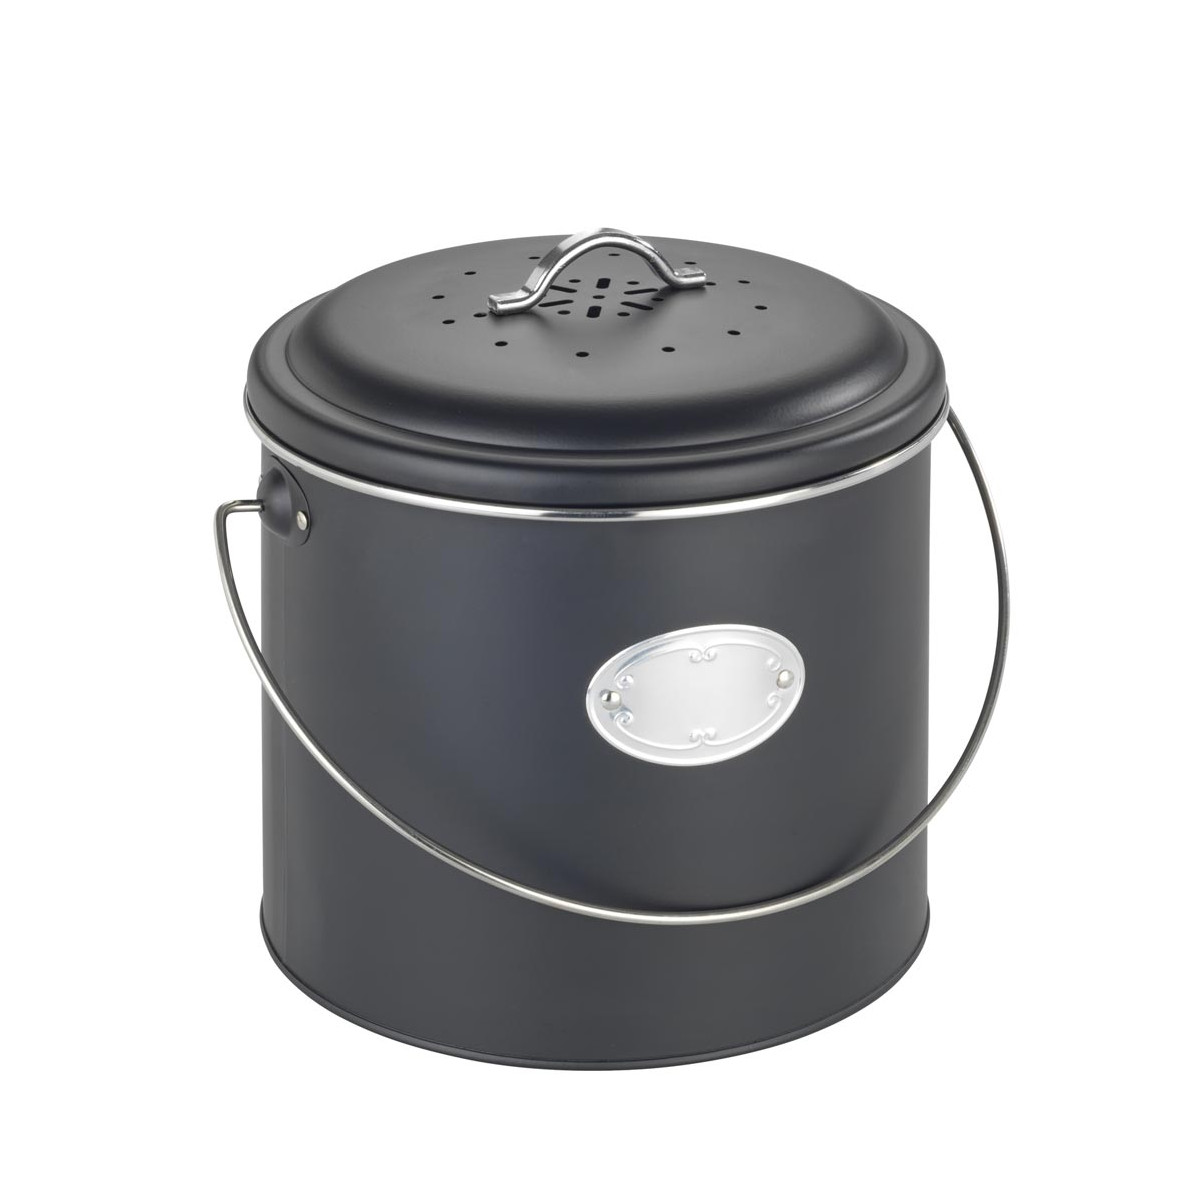 Un pot à compost design, pratique, écologique et économique